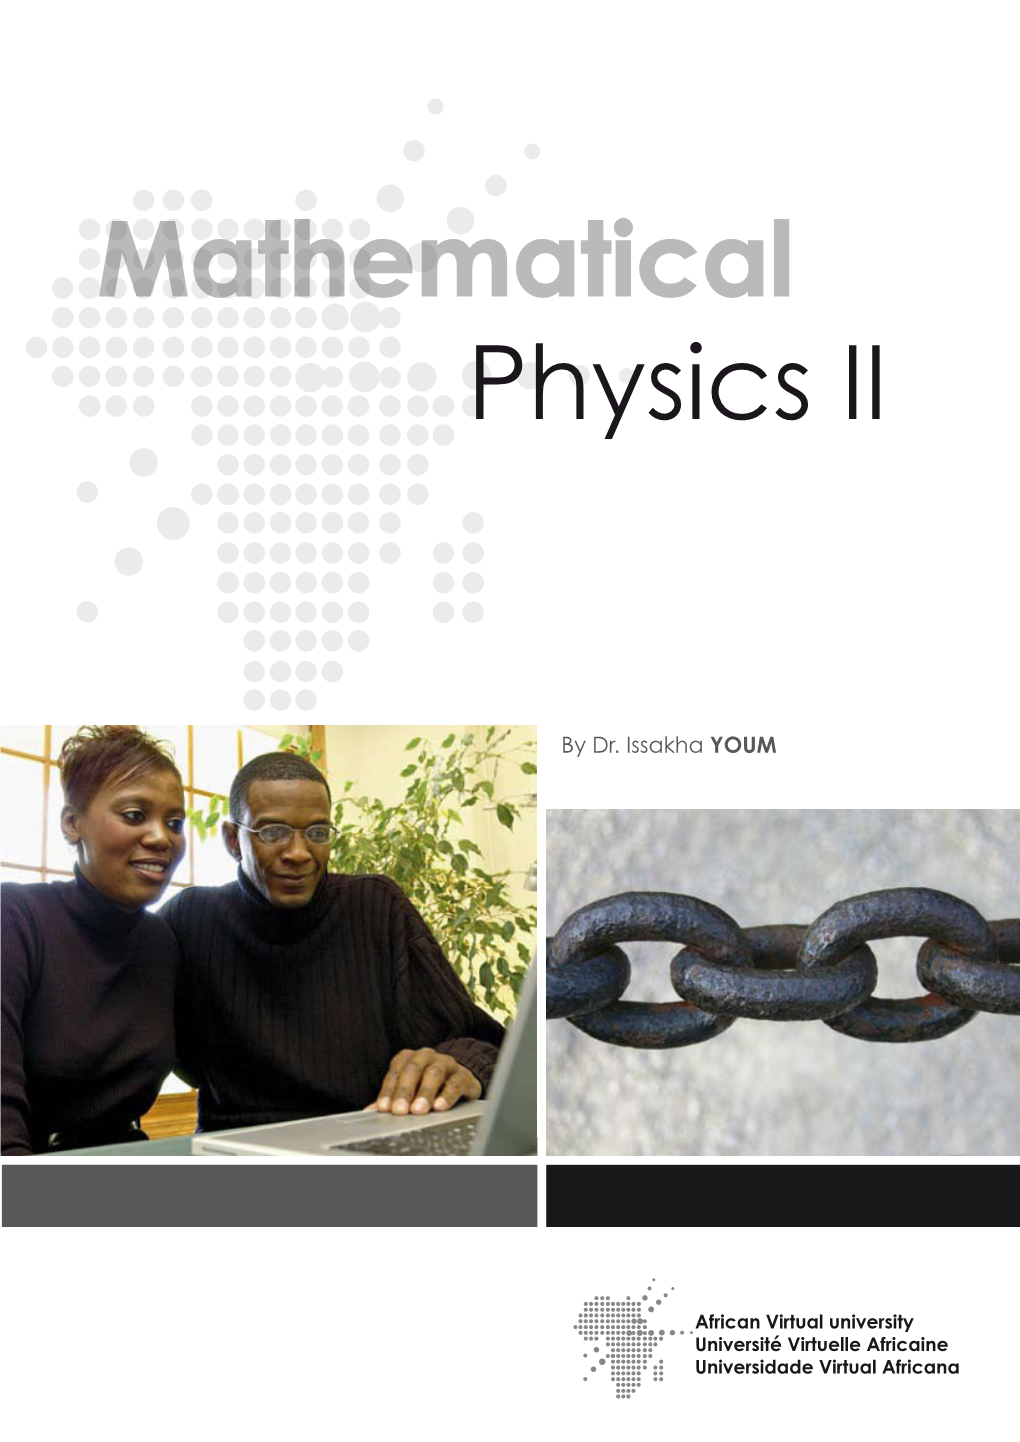 Mathematical Physics II